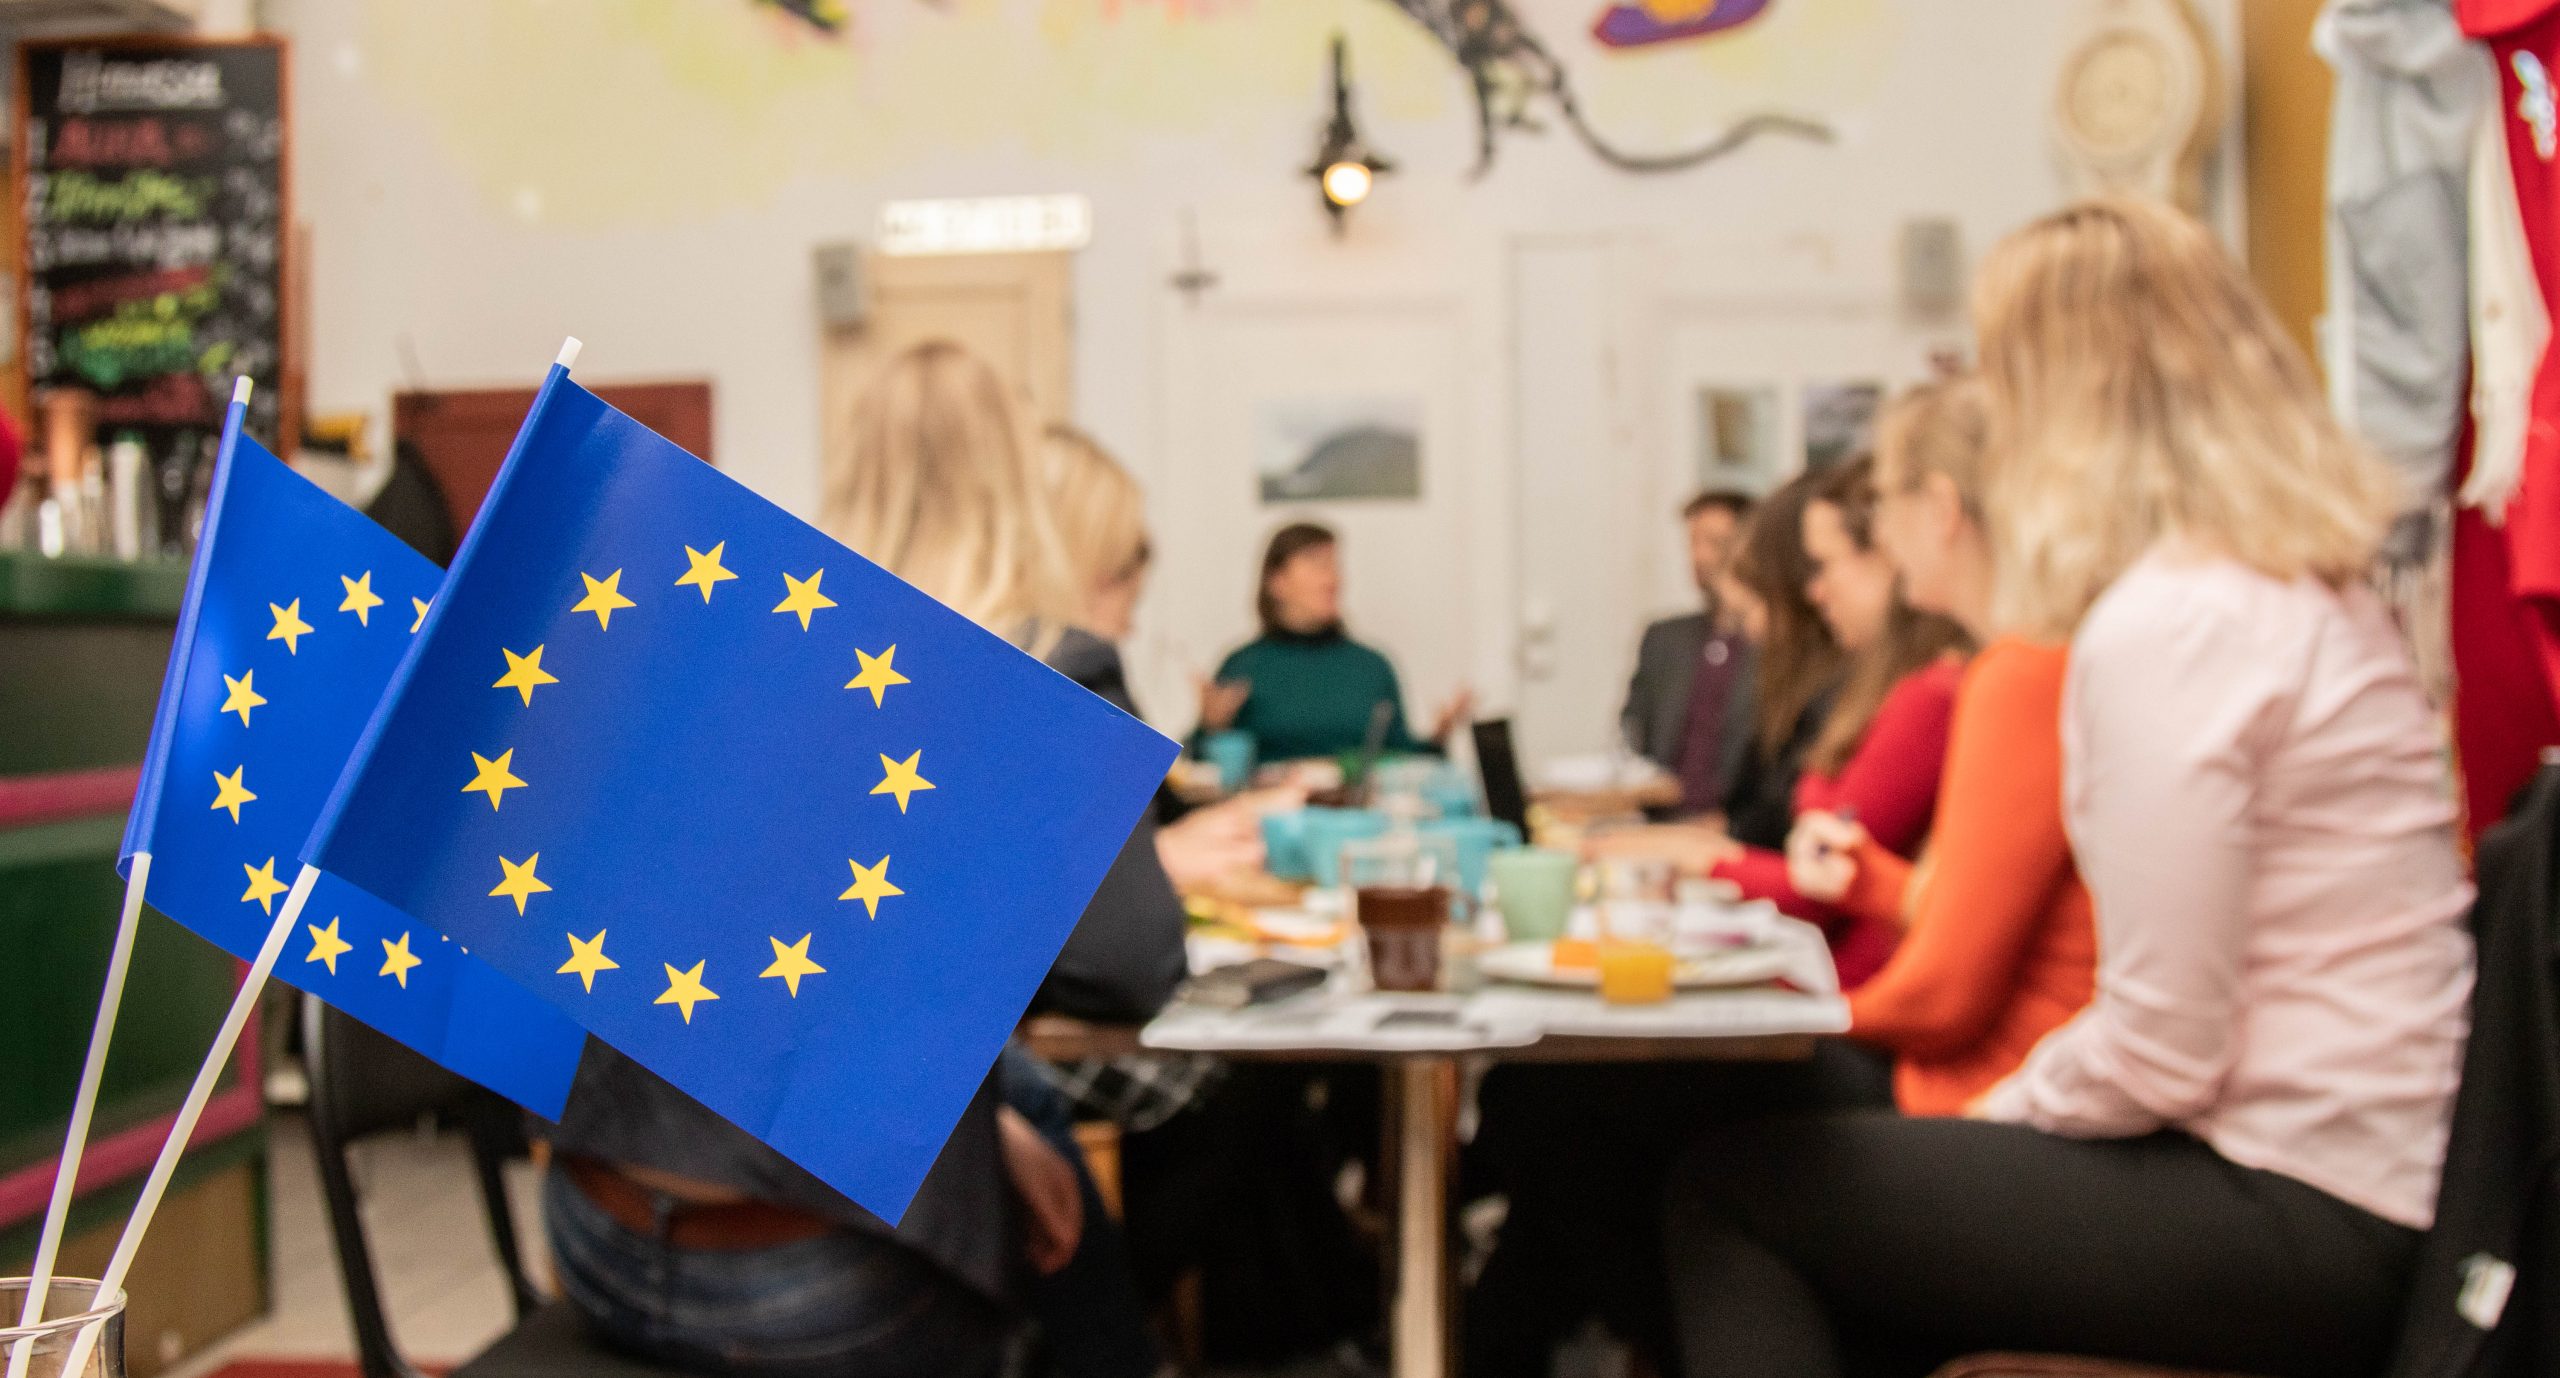 Kuvassa on kaksi pientä EU-lippua ja taustalla ihmisiä pöydän ympärillä.